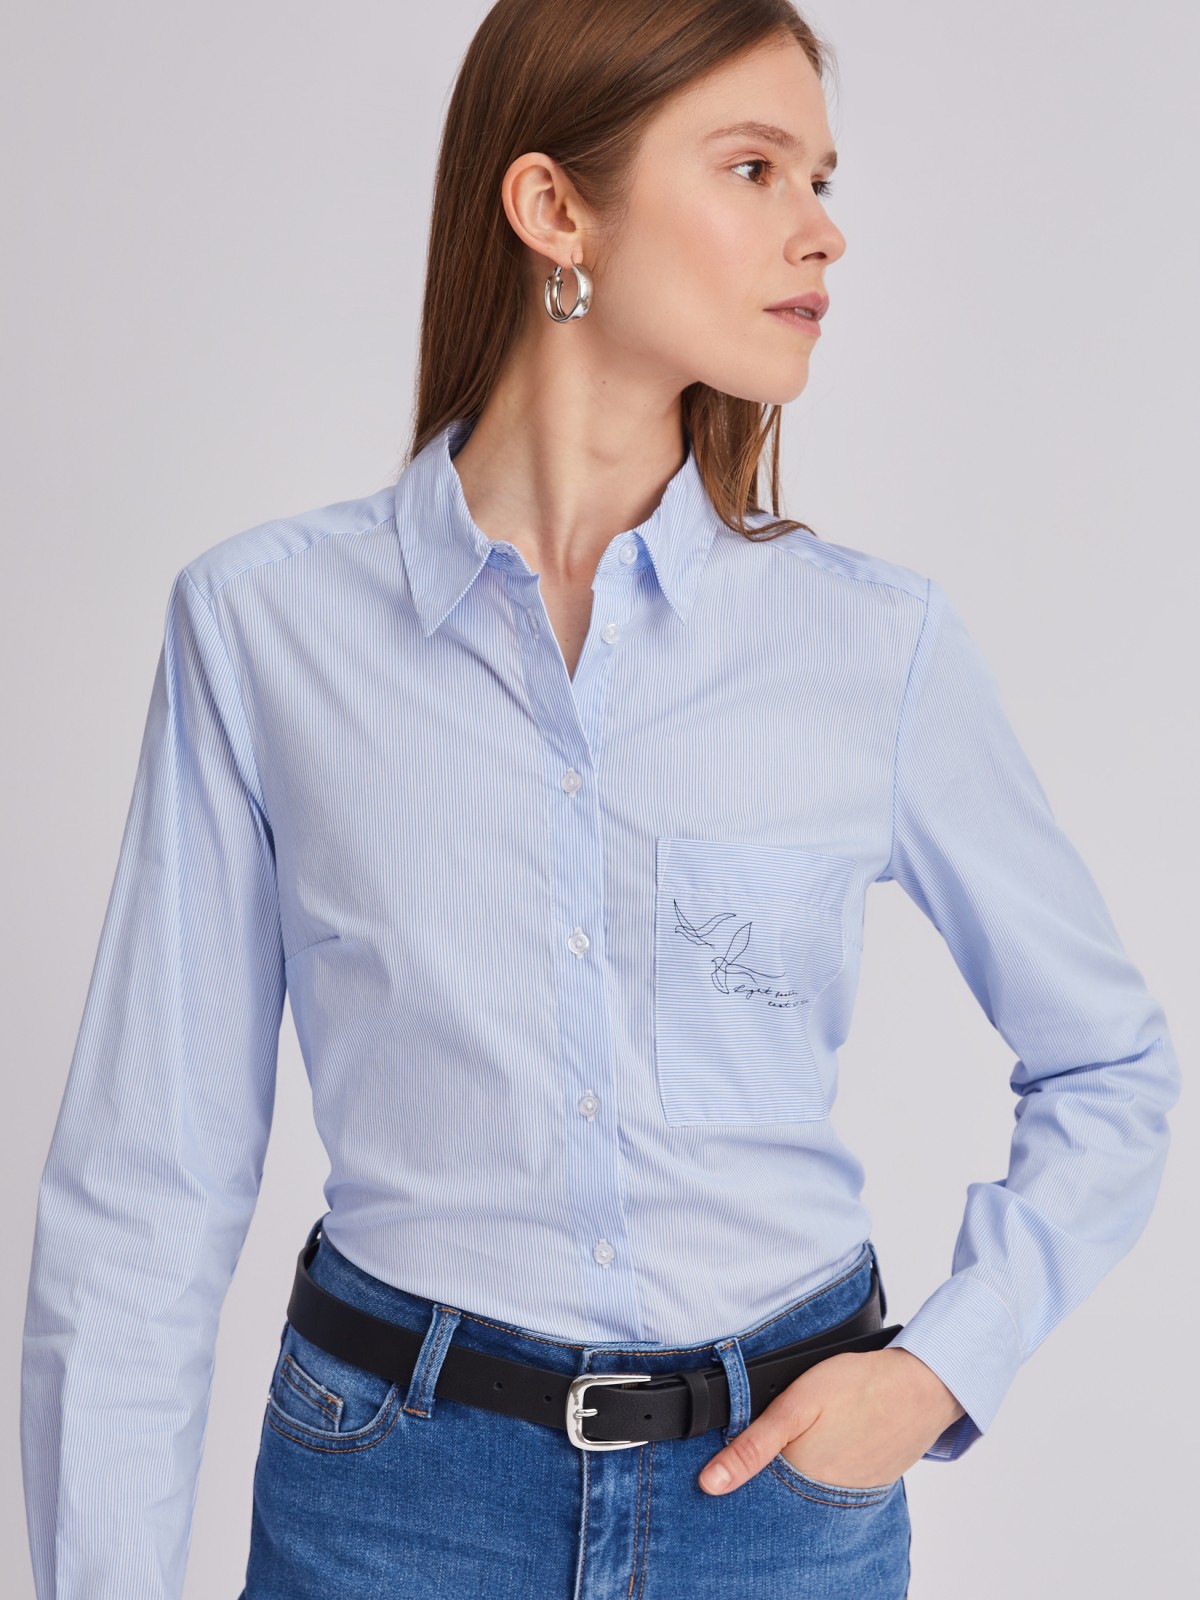 Офисная рубашка прямого силуэта с акцентом на кармане zolla 223311159242, цвет светло-голубой, размер M - фото 3